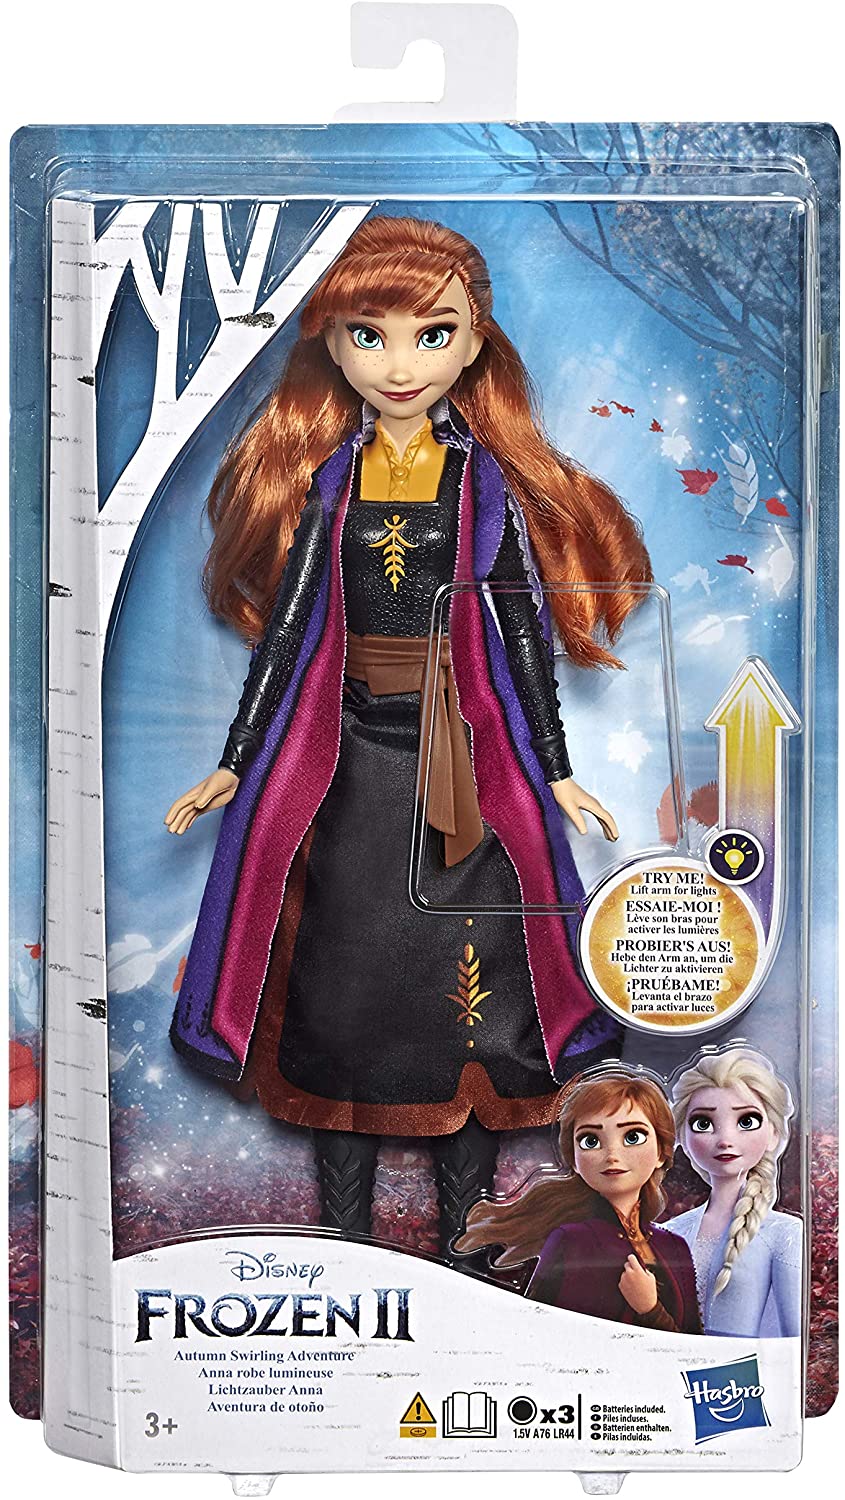 Disney Frozen Anna Autumn Swirling Adventure Fashion Doll That Lights Up, Inspired by Disney's Frozen 2 Movie